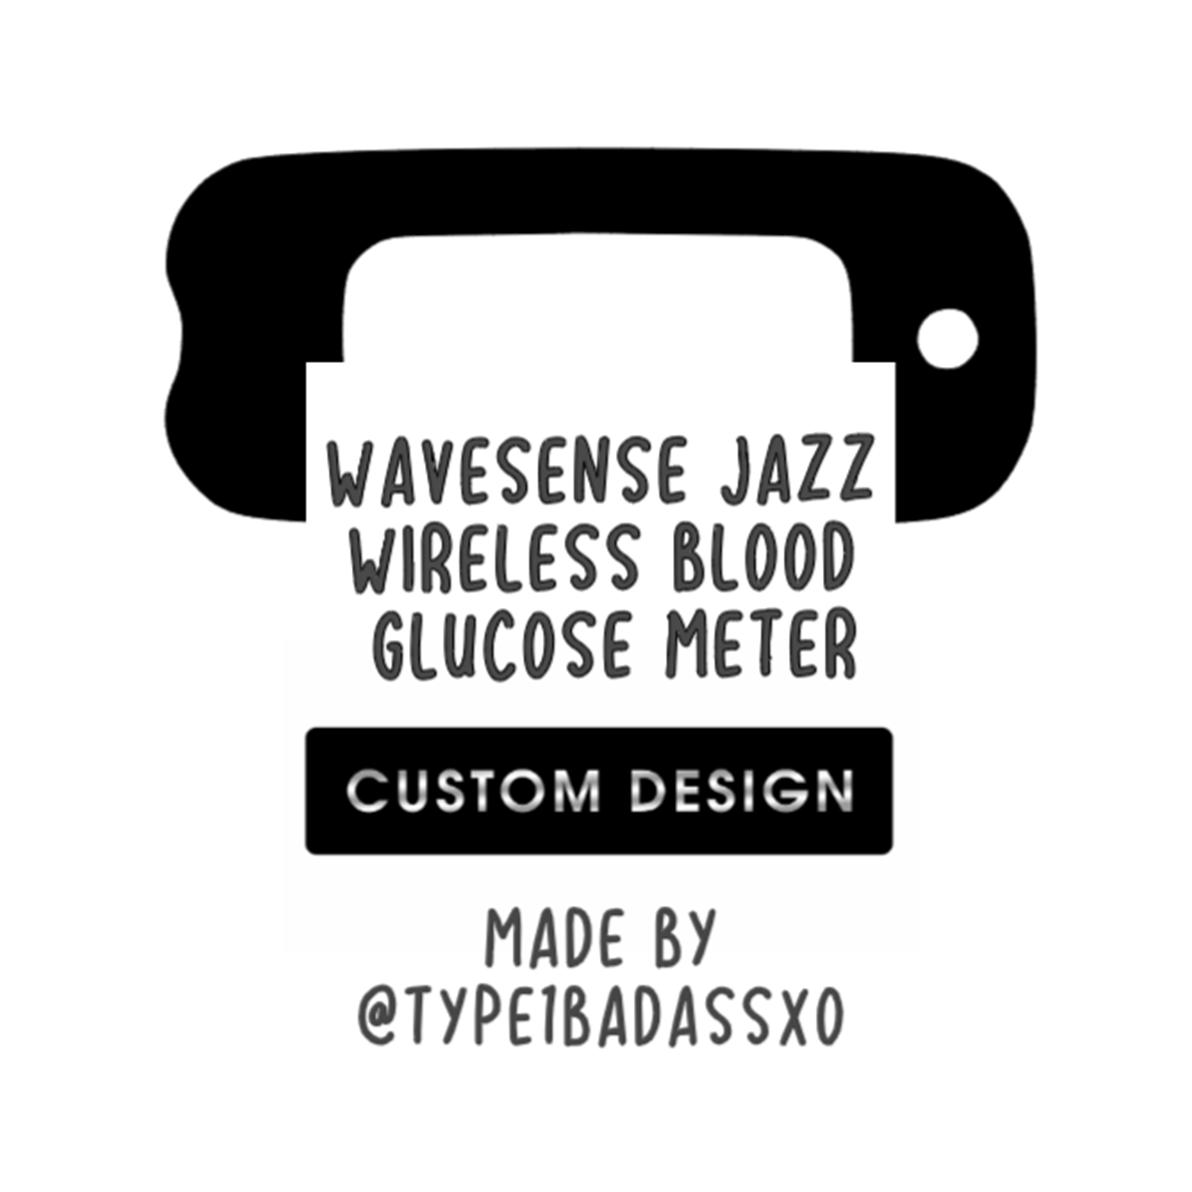 Custom Design - WaveSense Jazz Wireless Blood Glucose Meter